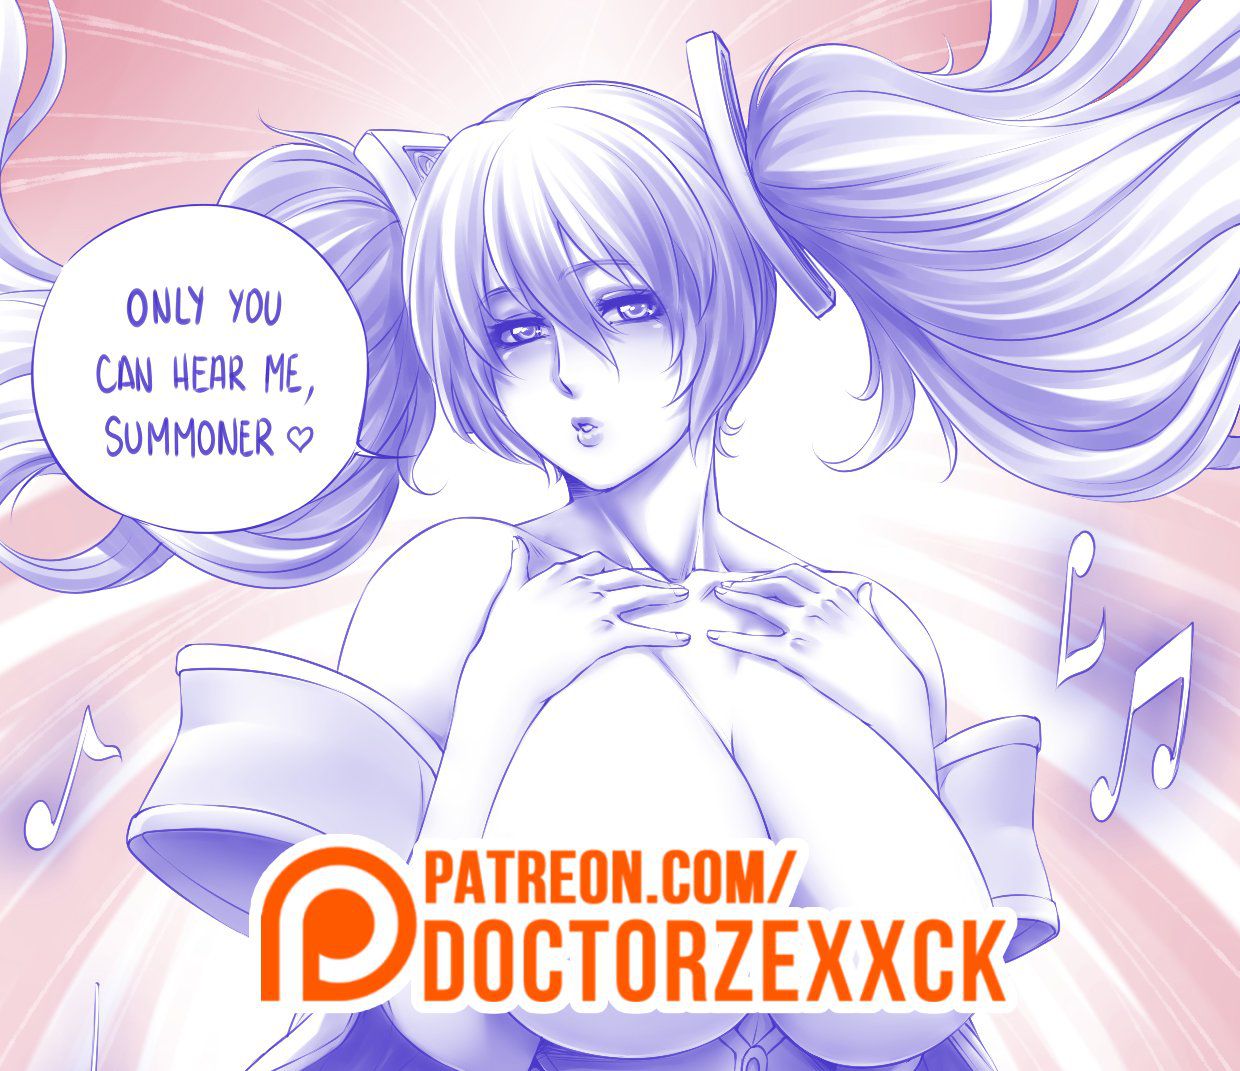 Artist - Doctor Zexxck / Dr. Zexxck 153